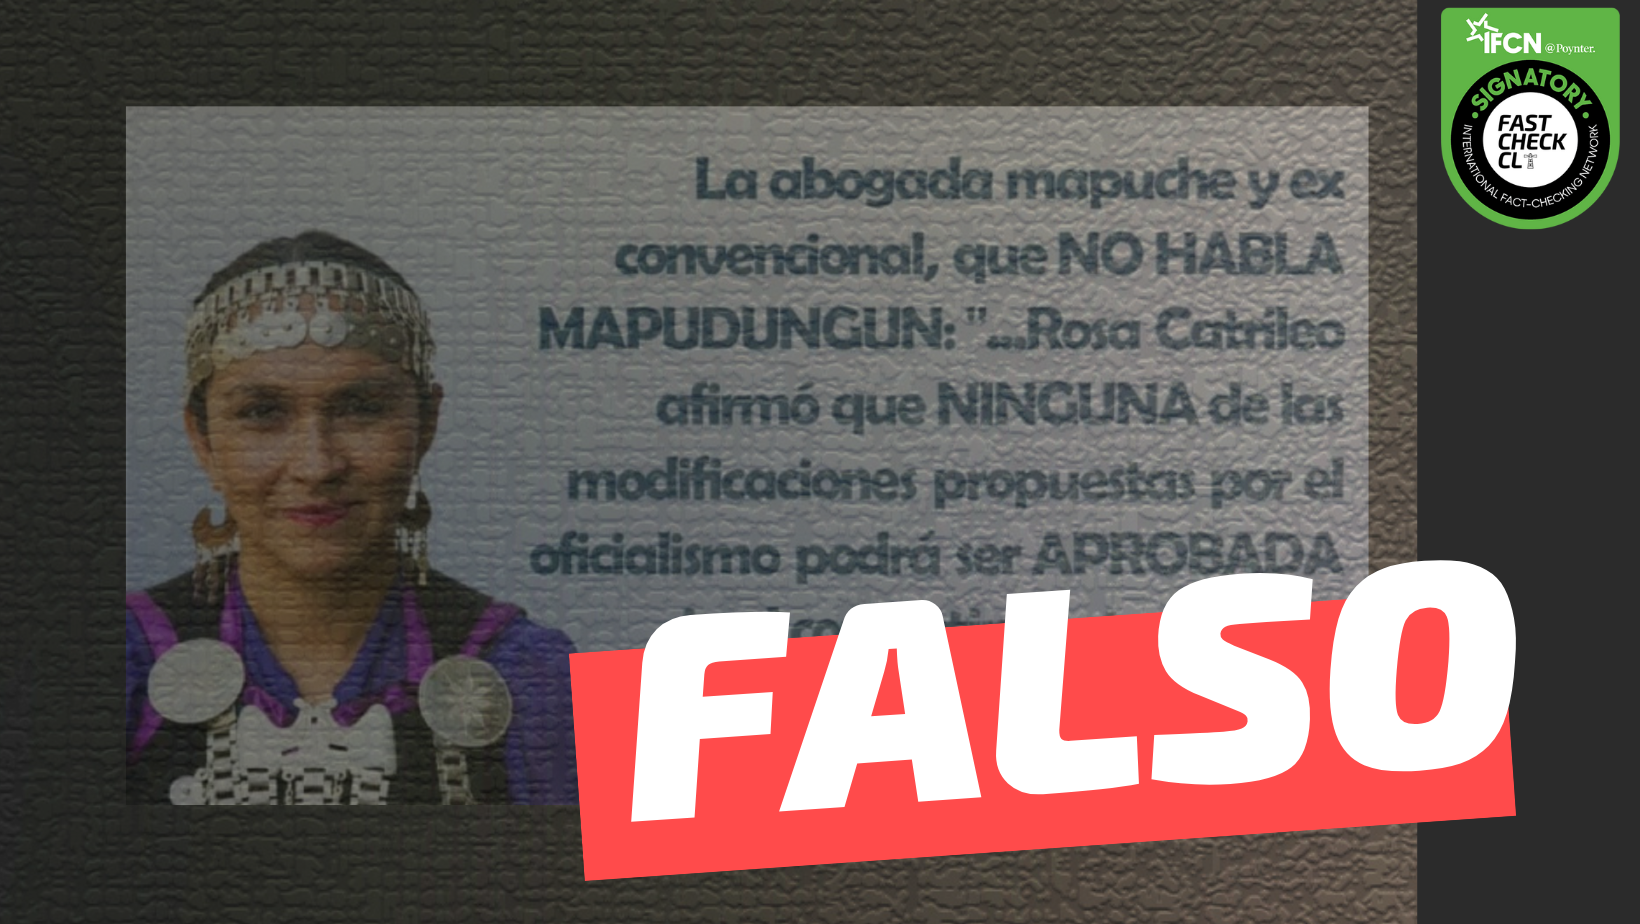 You are currently viewing “Rosa Catrileo afirm贸 que ninguna de las modificaciones propuestas por el oficialismo podr谩 ser aprobada sin el consentimiento de los 11 pueblos originarios”: #Falso